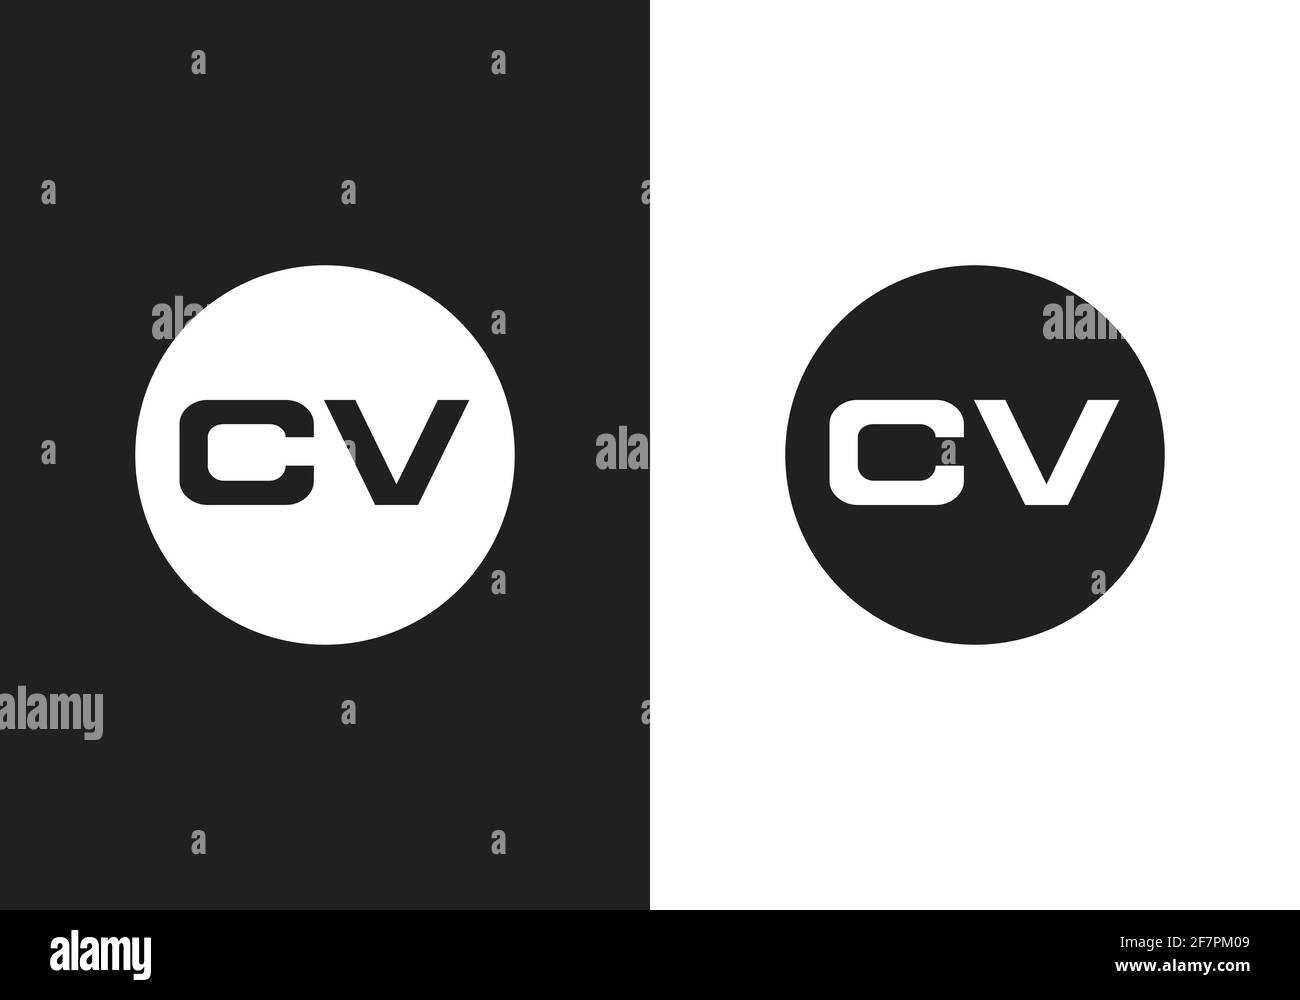 Initial Monogram Letter C V Logo Design Vector Template Stock Vector